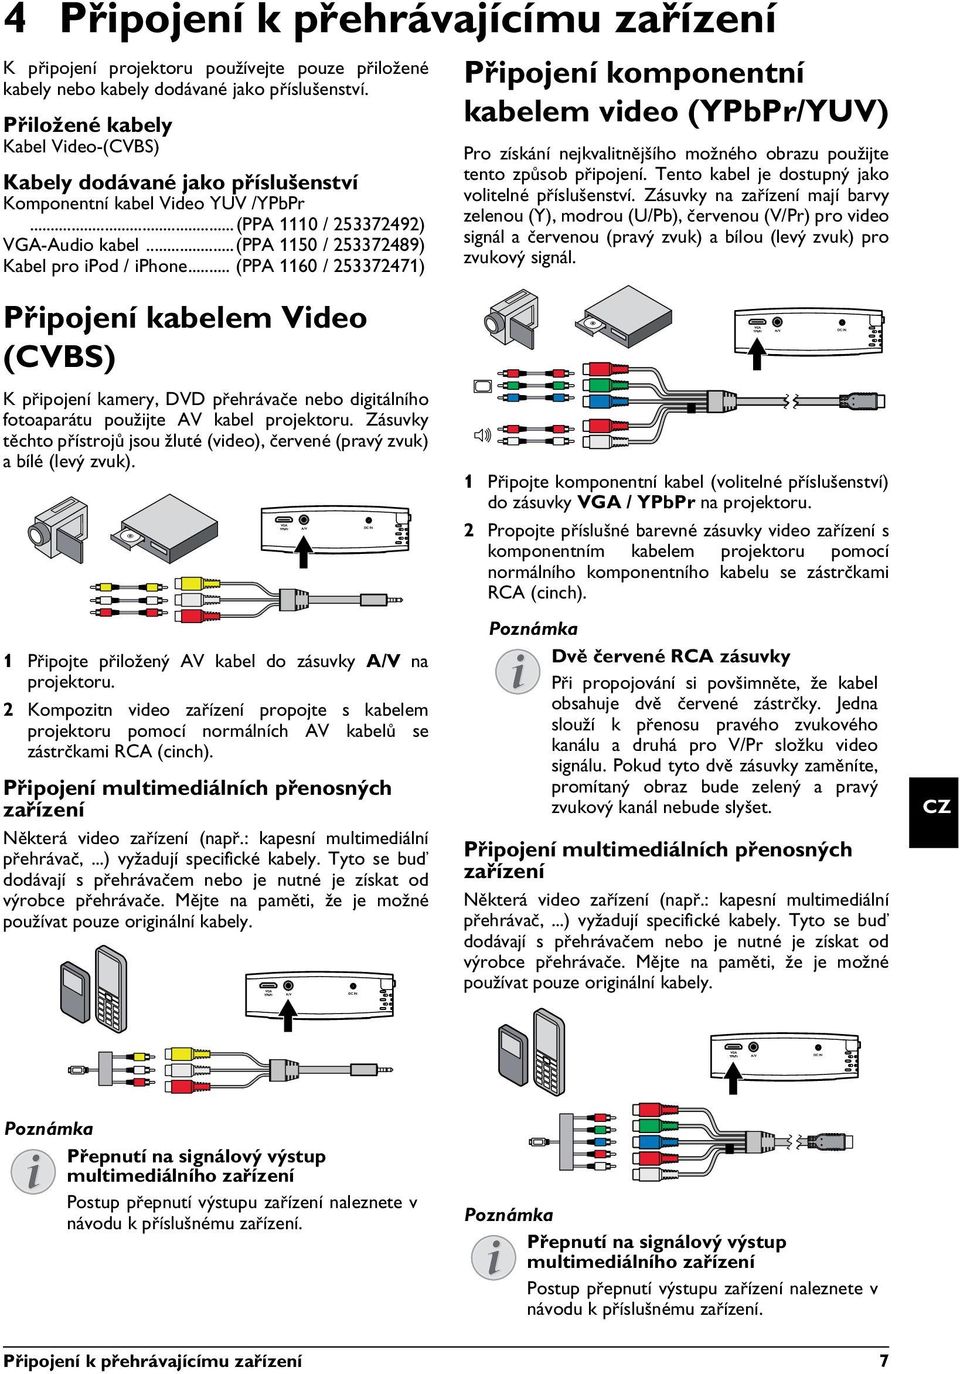 .. (PPA 1160 / 253372471) Připojení komponentní kabelem video (YPbPr/YUV) Pro získání nejkvalitnějšího možného obrazu použijte tento způsob připojení.